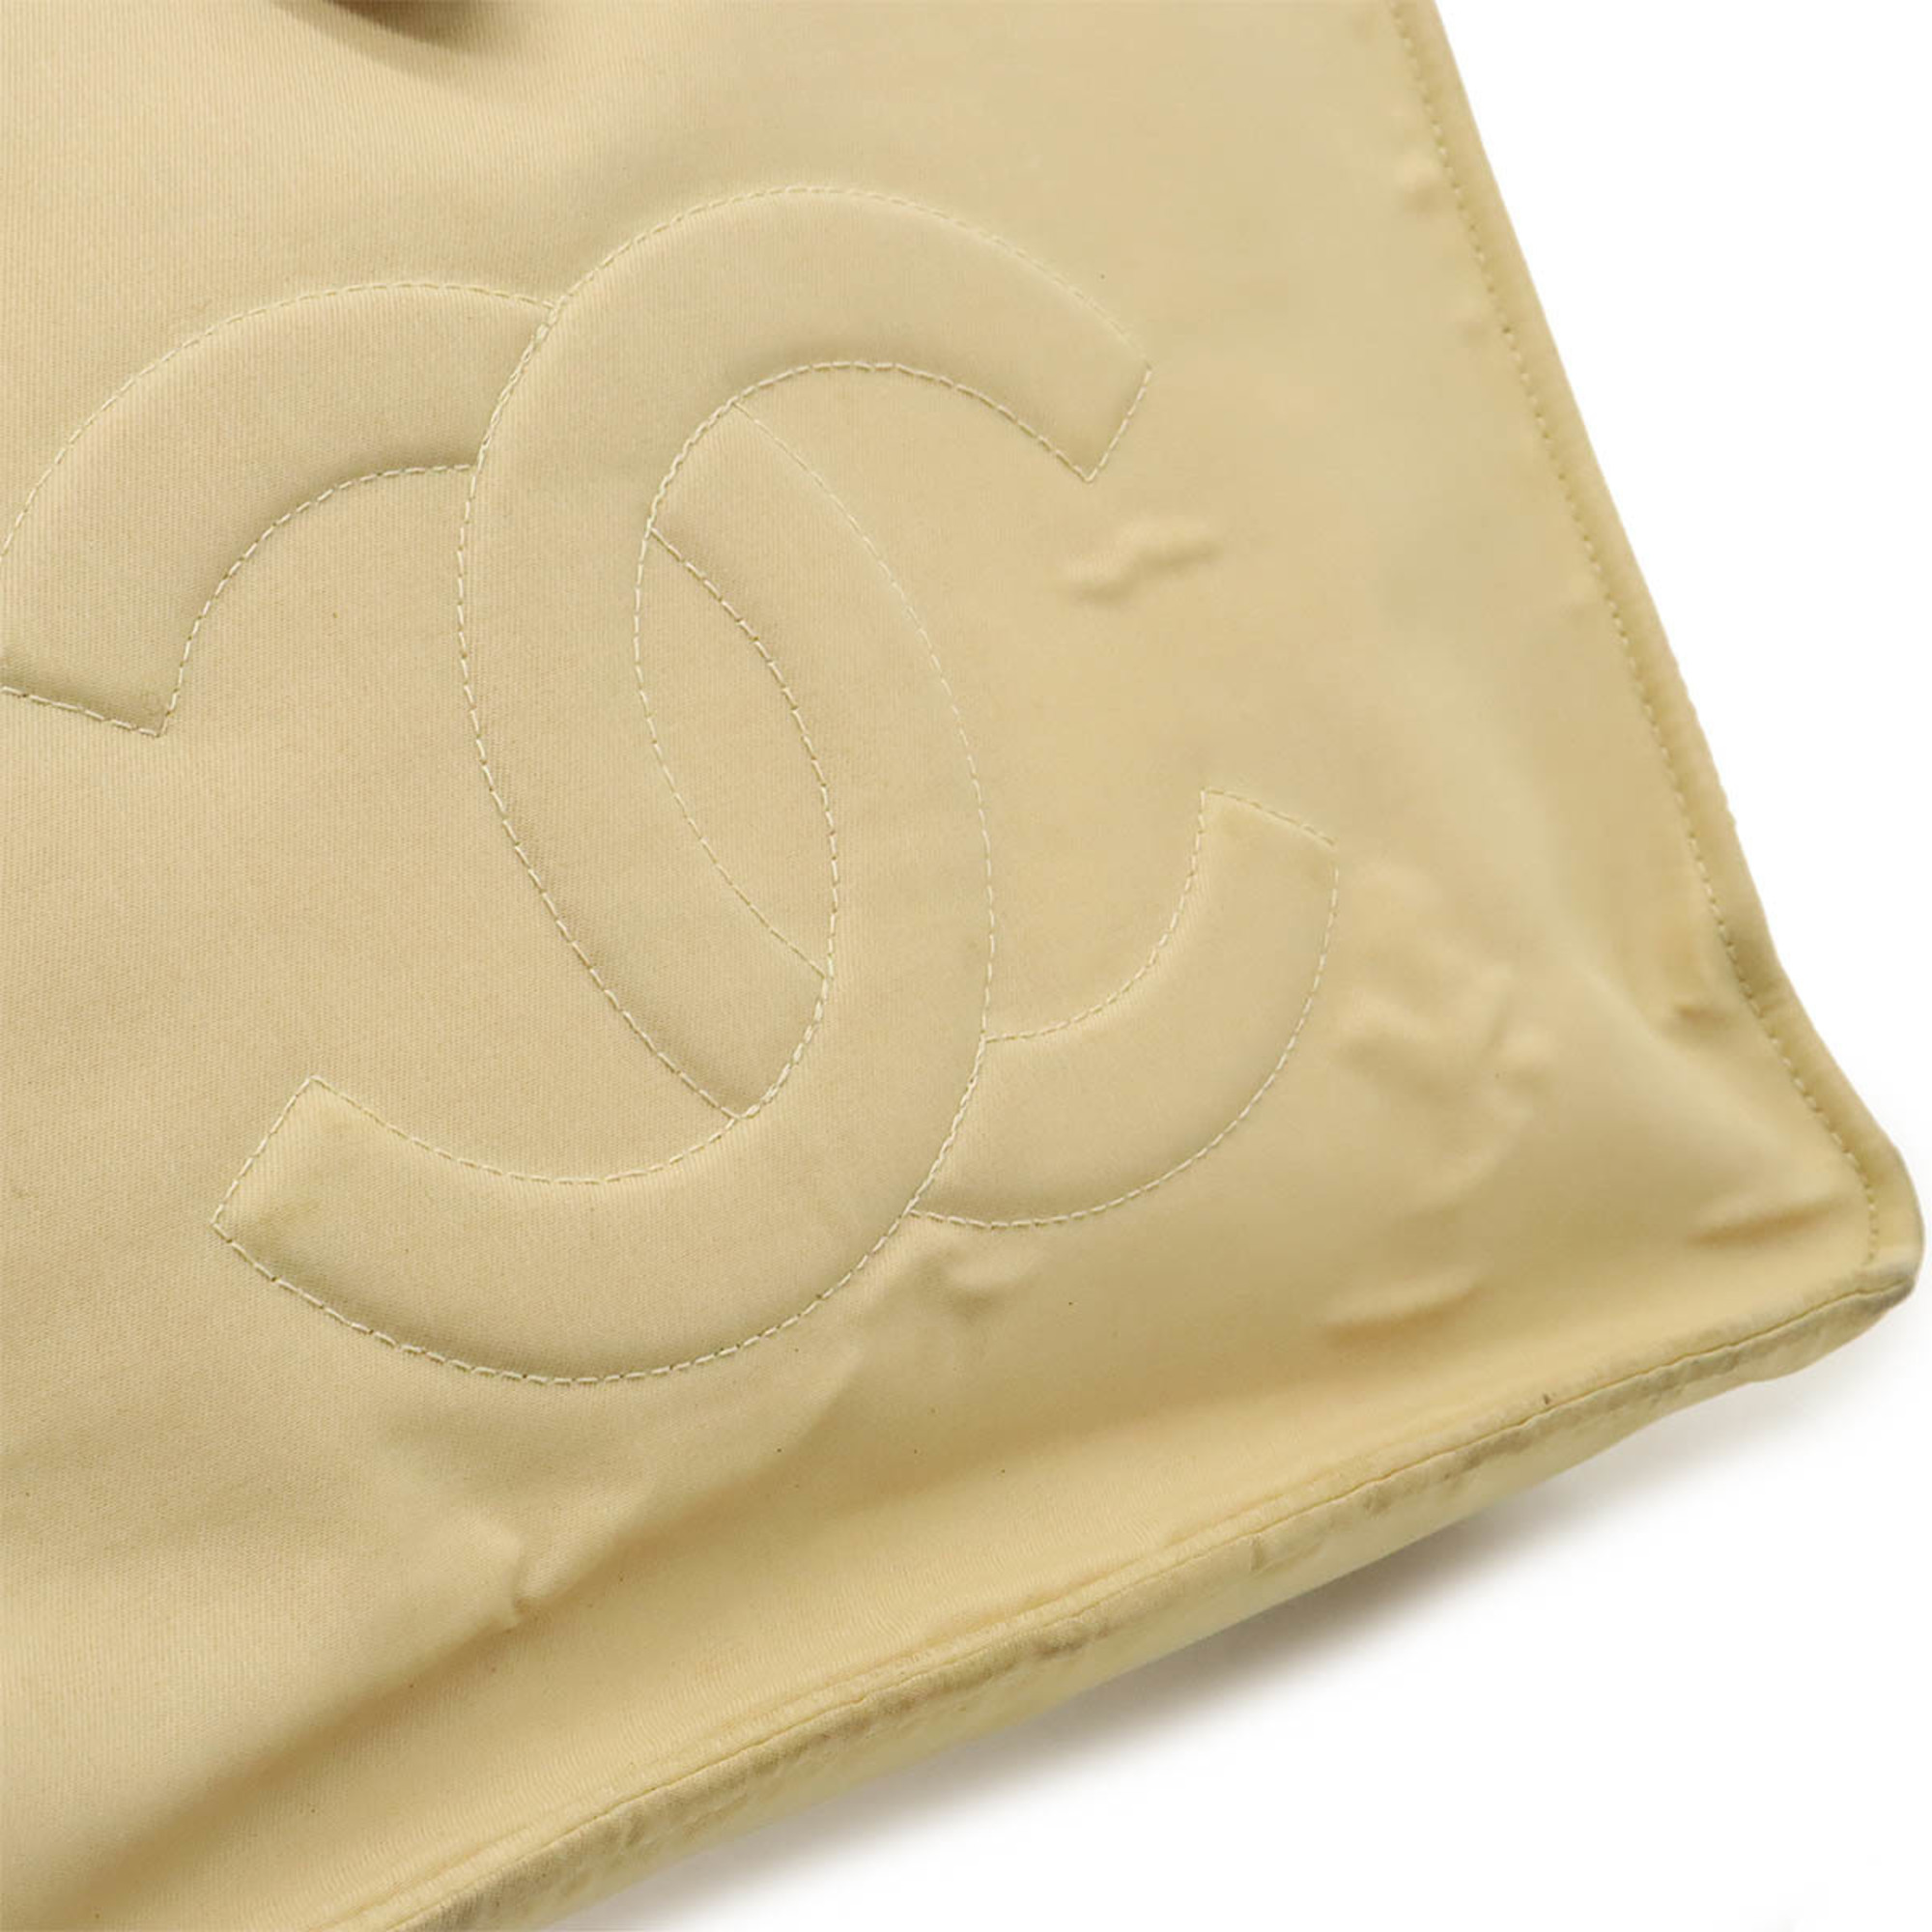 CHANEL Coco Mark Button Tote Bag Handbag Nylon Beige